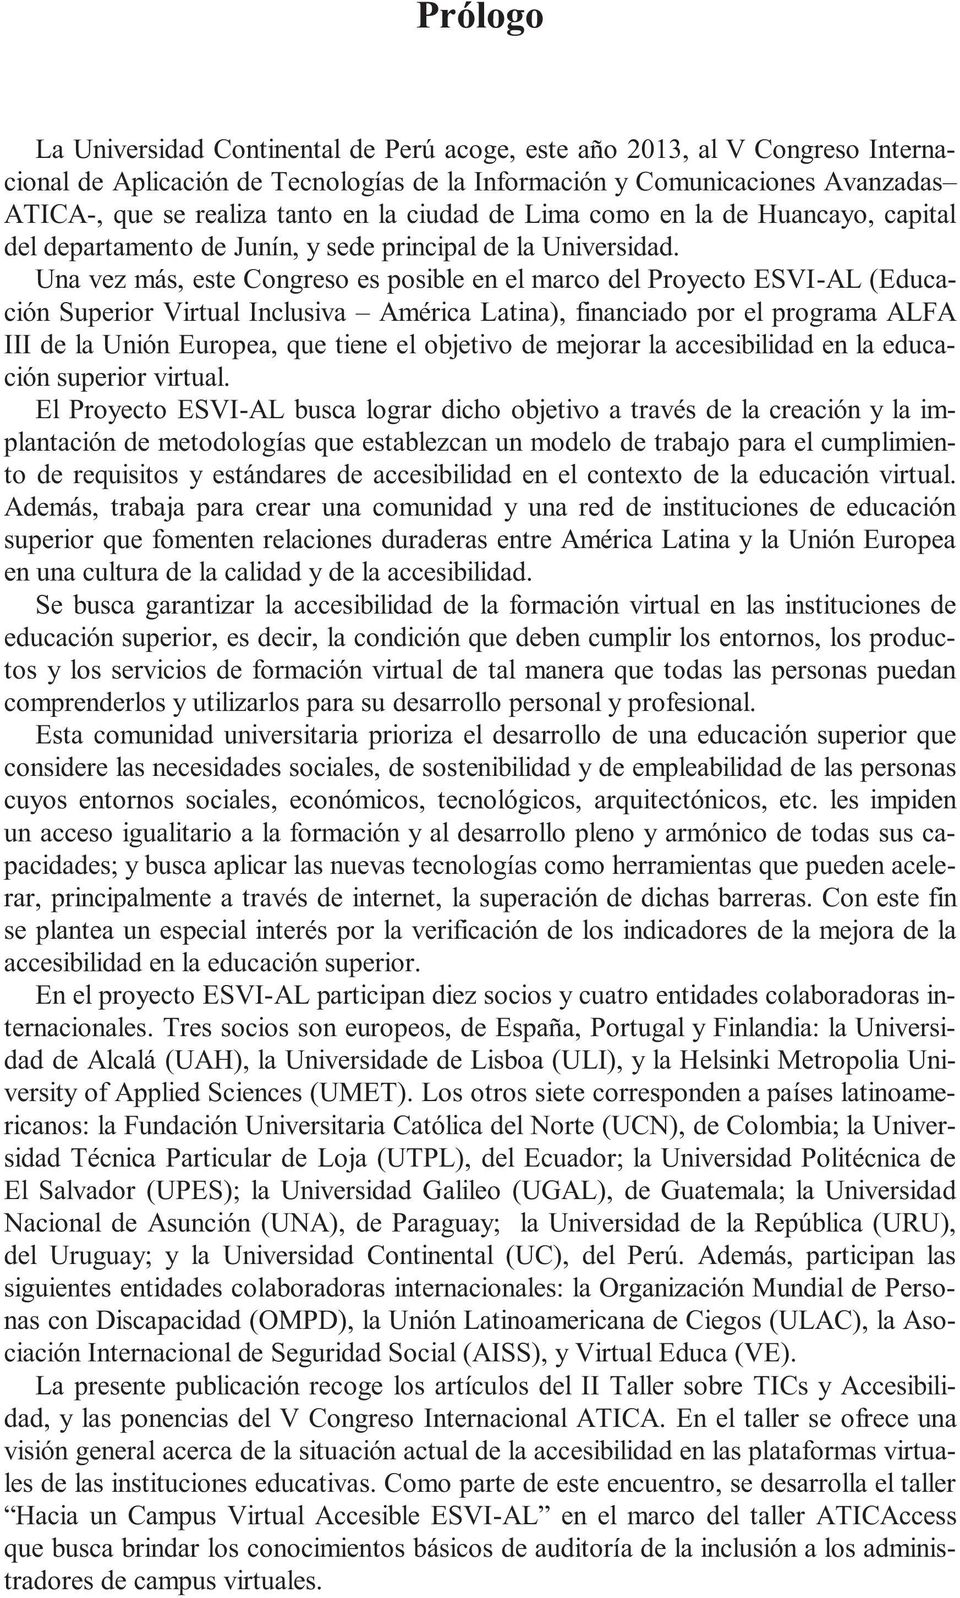 Una vez más, este Congreso es posible en el marco del Proyecto ESVI-AL (Educación Superior Virtual Inclusiva América Latina), financiado por el programa ALFA III de la Unión Europea, que tiene el